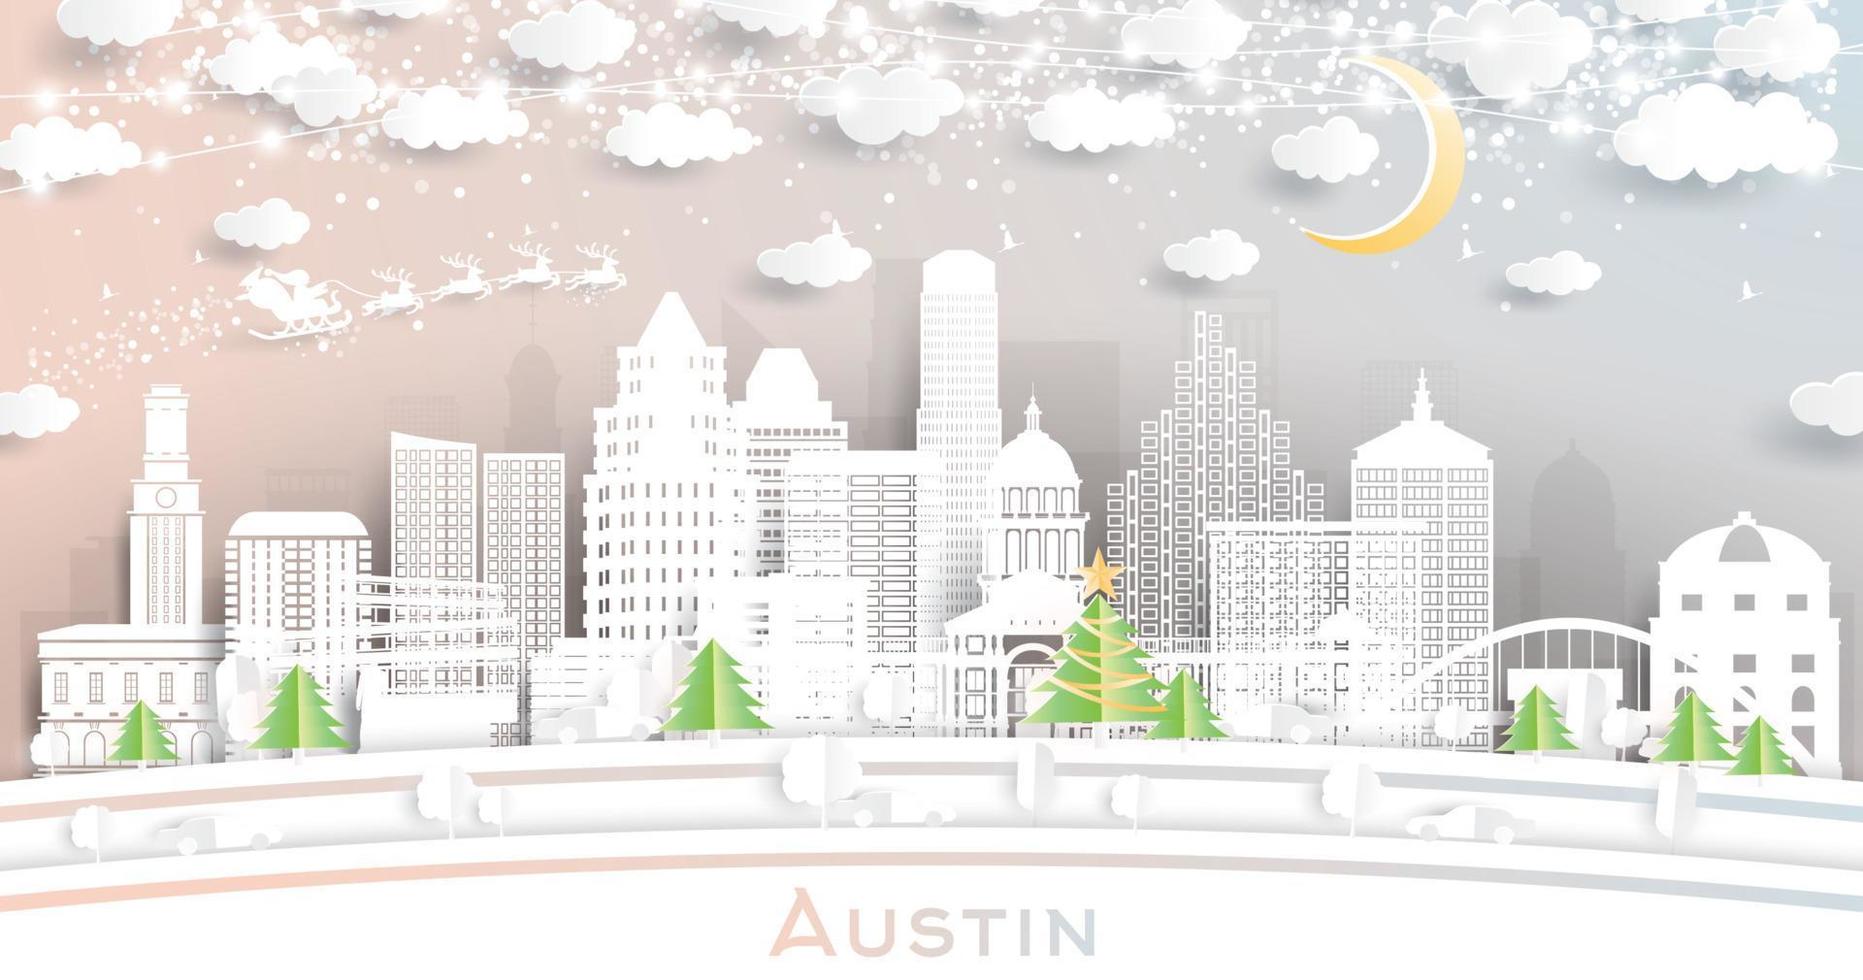 austin texas stad horisont i papper skära stil med snöflingor, måne och neon krans. vektor